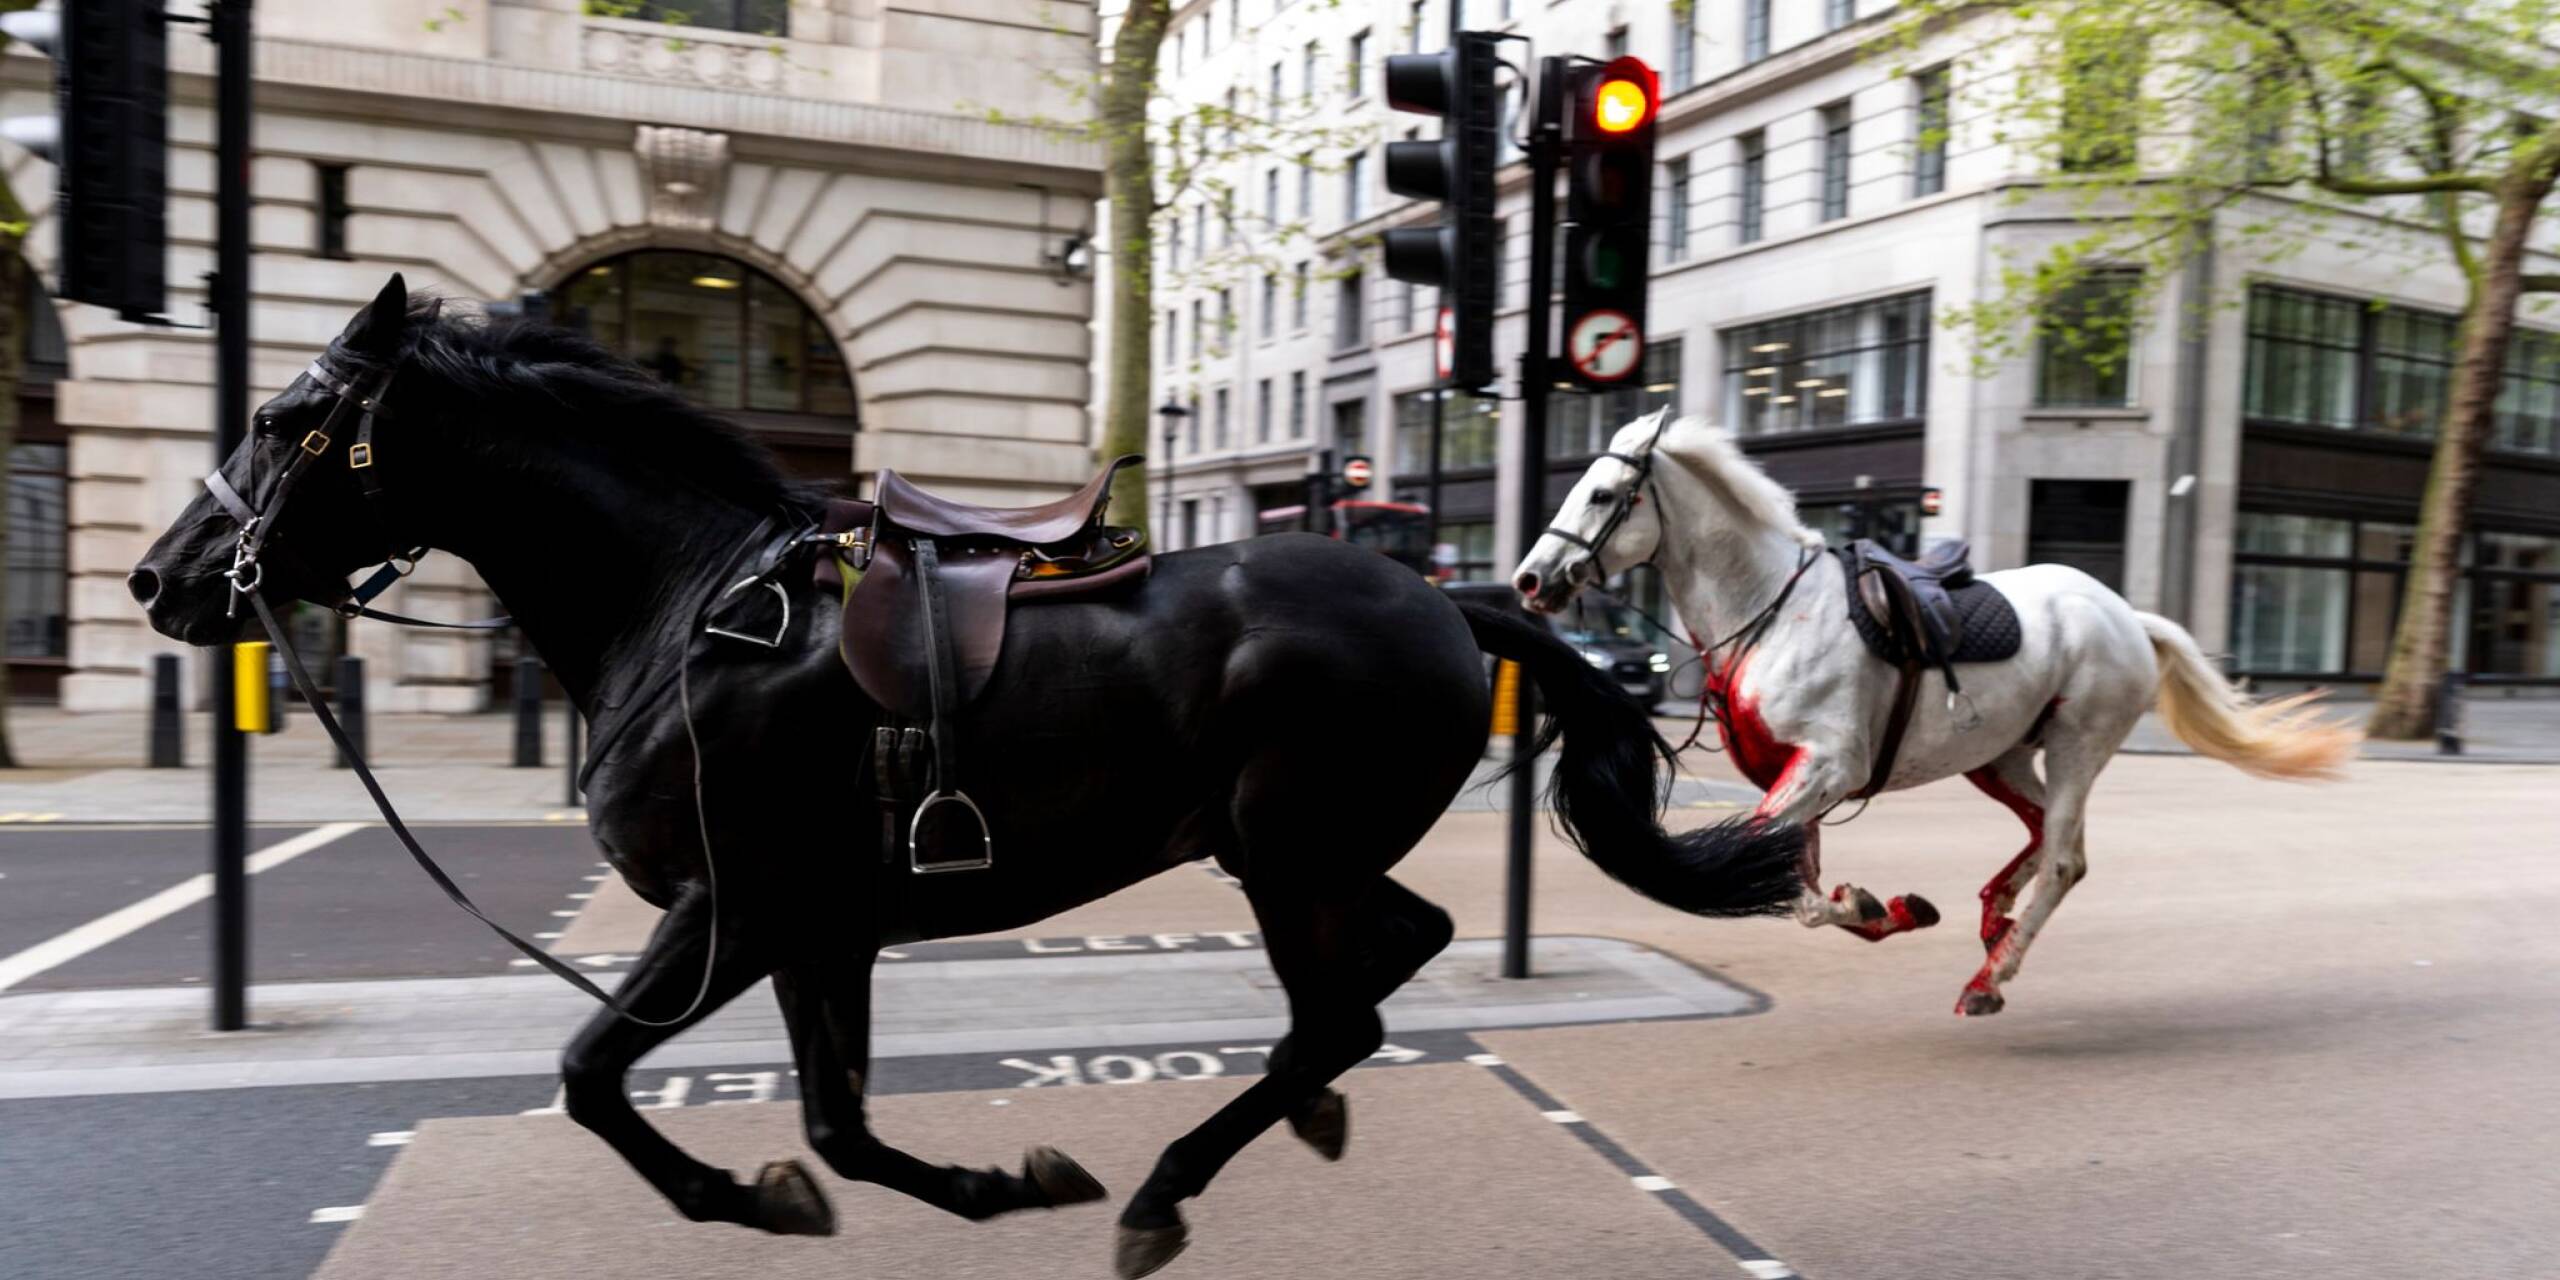 Zwei ausgebrochene Pferde galoppieren durch die Straßen Londons. Bei einer Routineübung im Stadtteil Belgravia rissen sich mehrere Militärpferde los und rannten anschließend durch die Innenstadt.